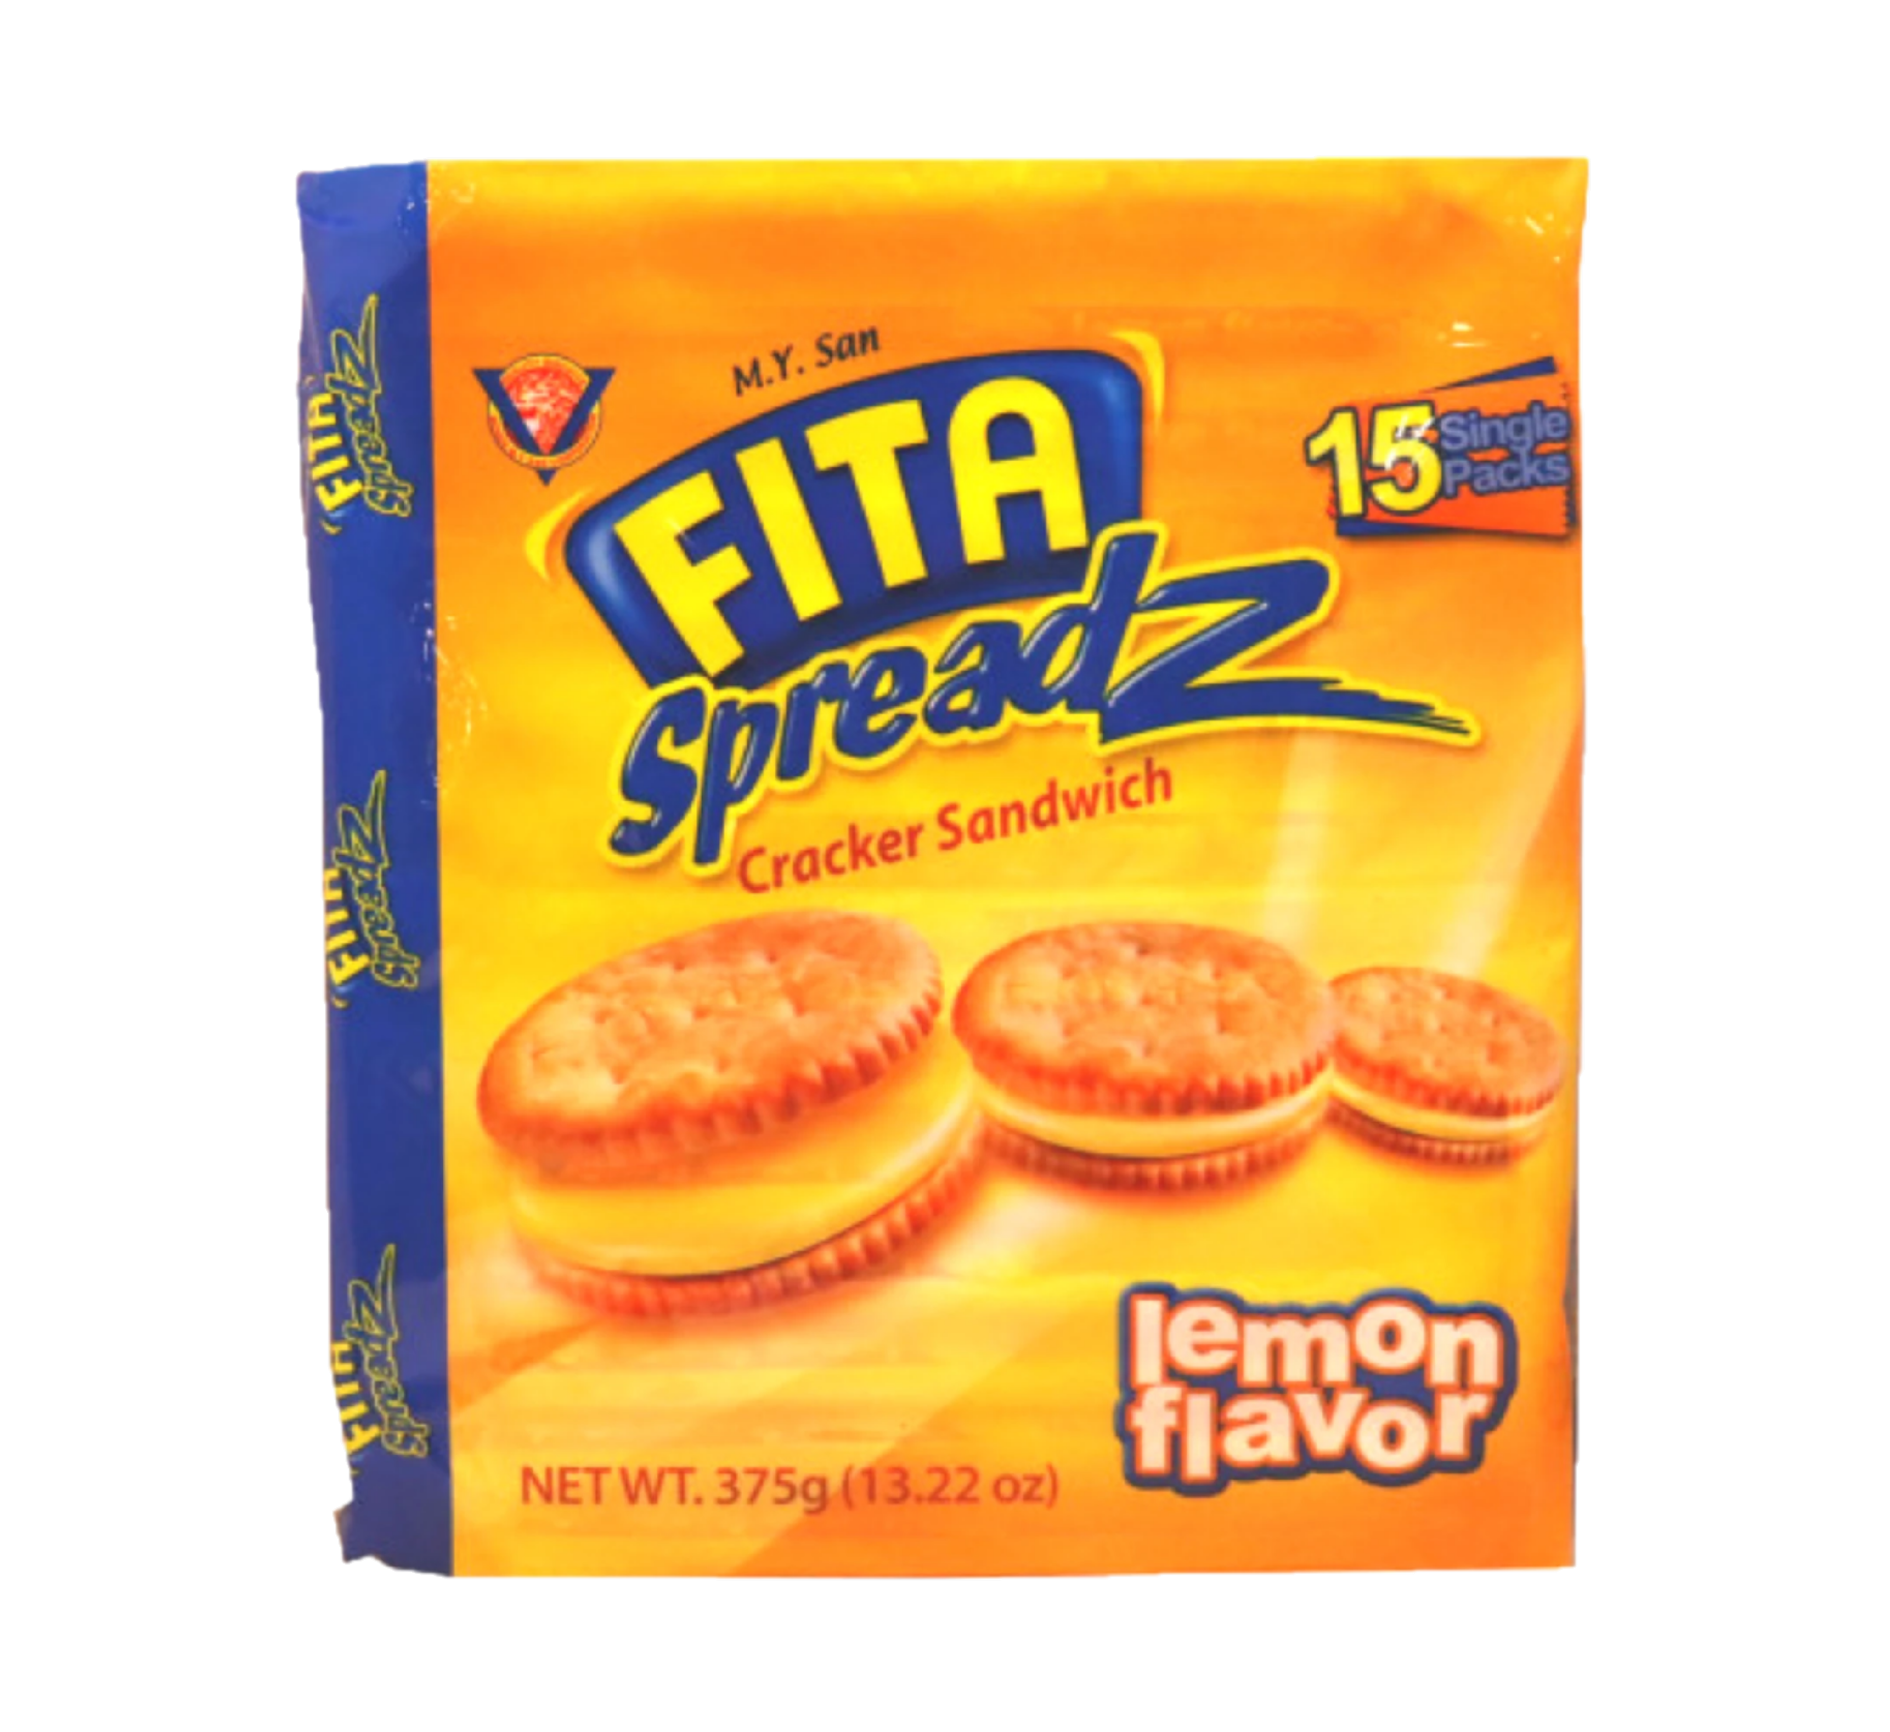 M. Y. San  Fita spreadz cracker sandwich lemon flavor